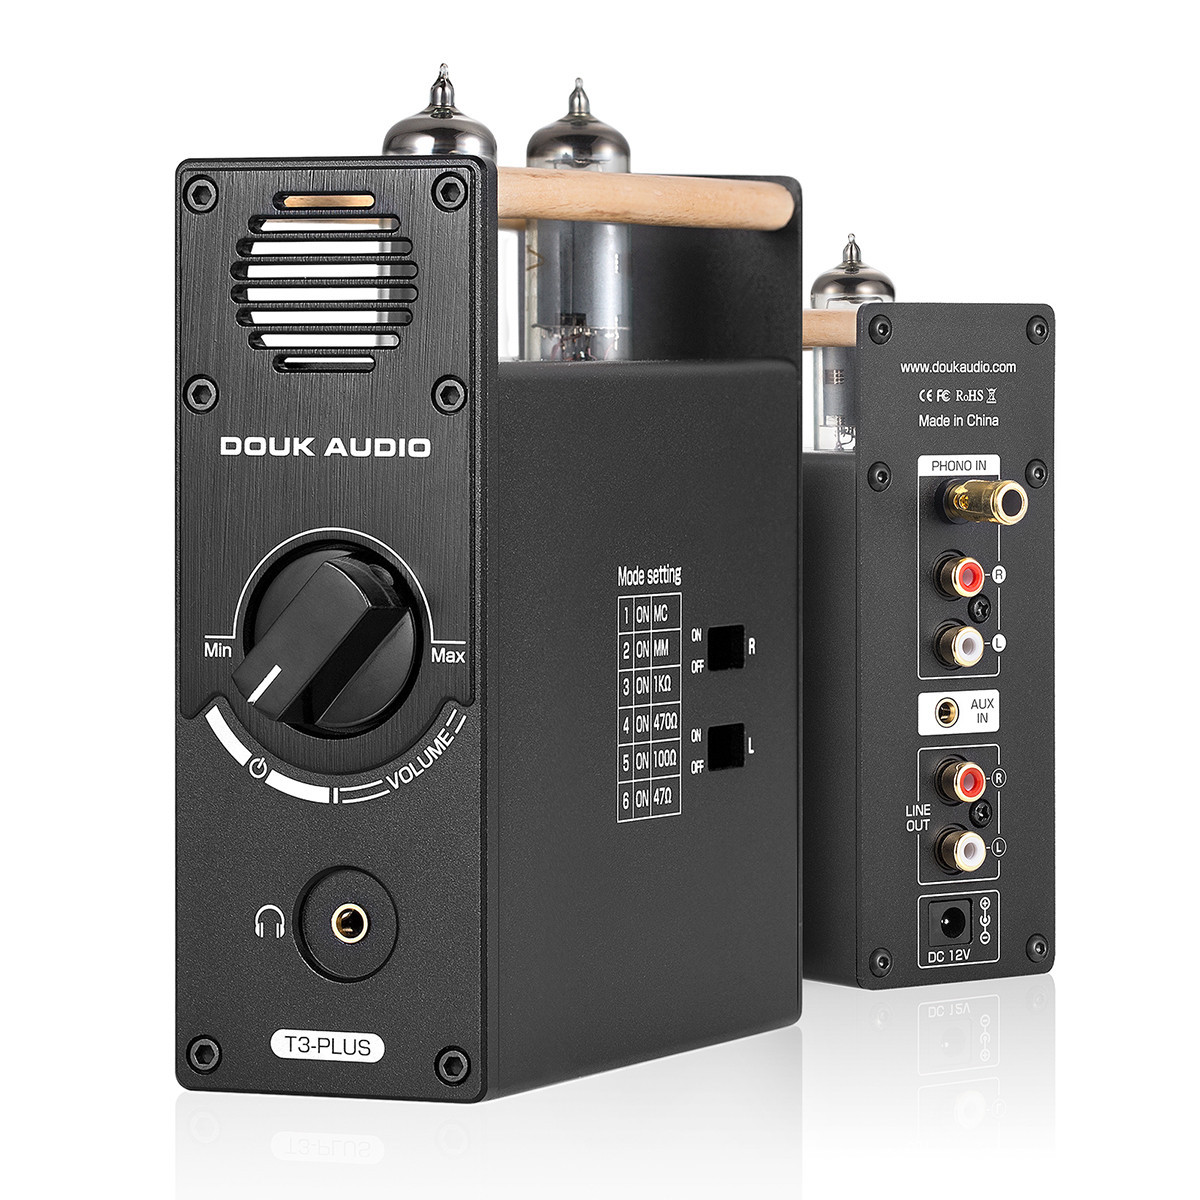 2312円 激安人気新品 Douk Audio T3 PRO MM フォノ ステージ プリアンプ Mini ステレオ 真空管プリアンプ Phono